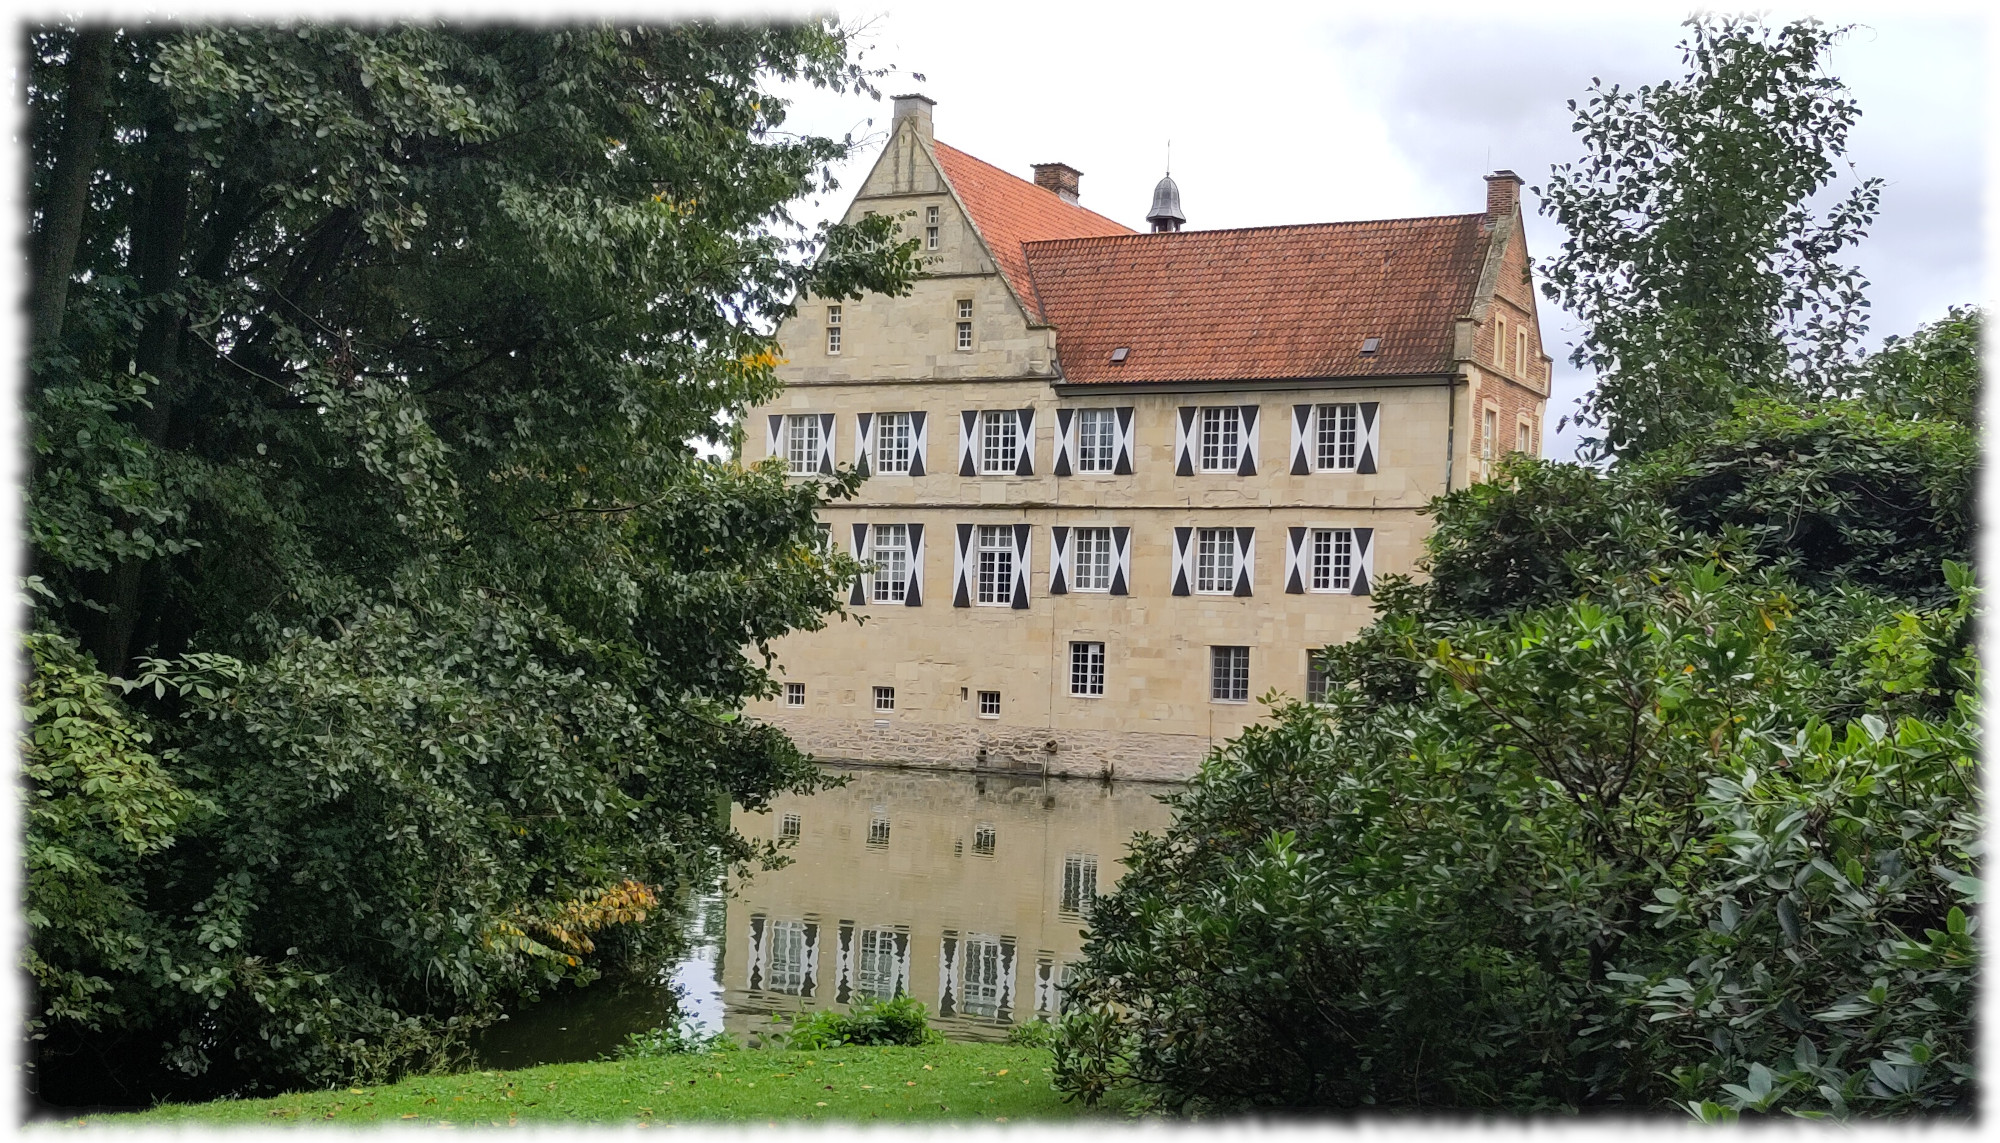 Burg Hülshoff mit Spiegelung im Wasser des Burggrabens, eingerahmt von Bäumen und Sträuchern. Himmel bedeckt. 